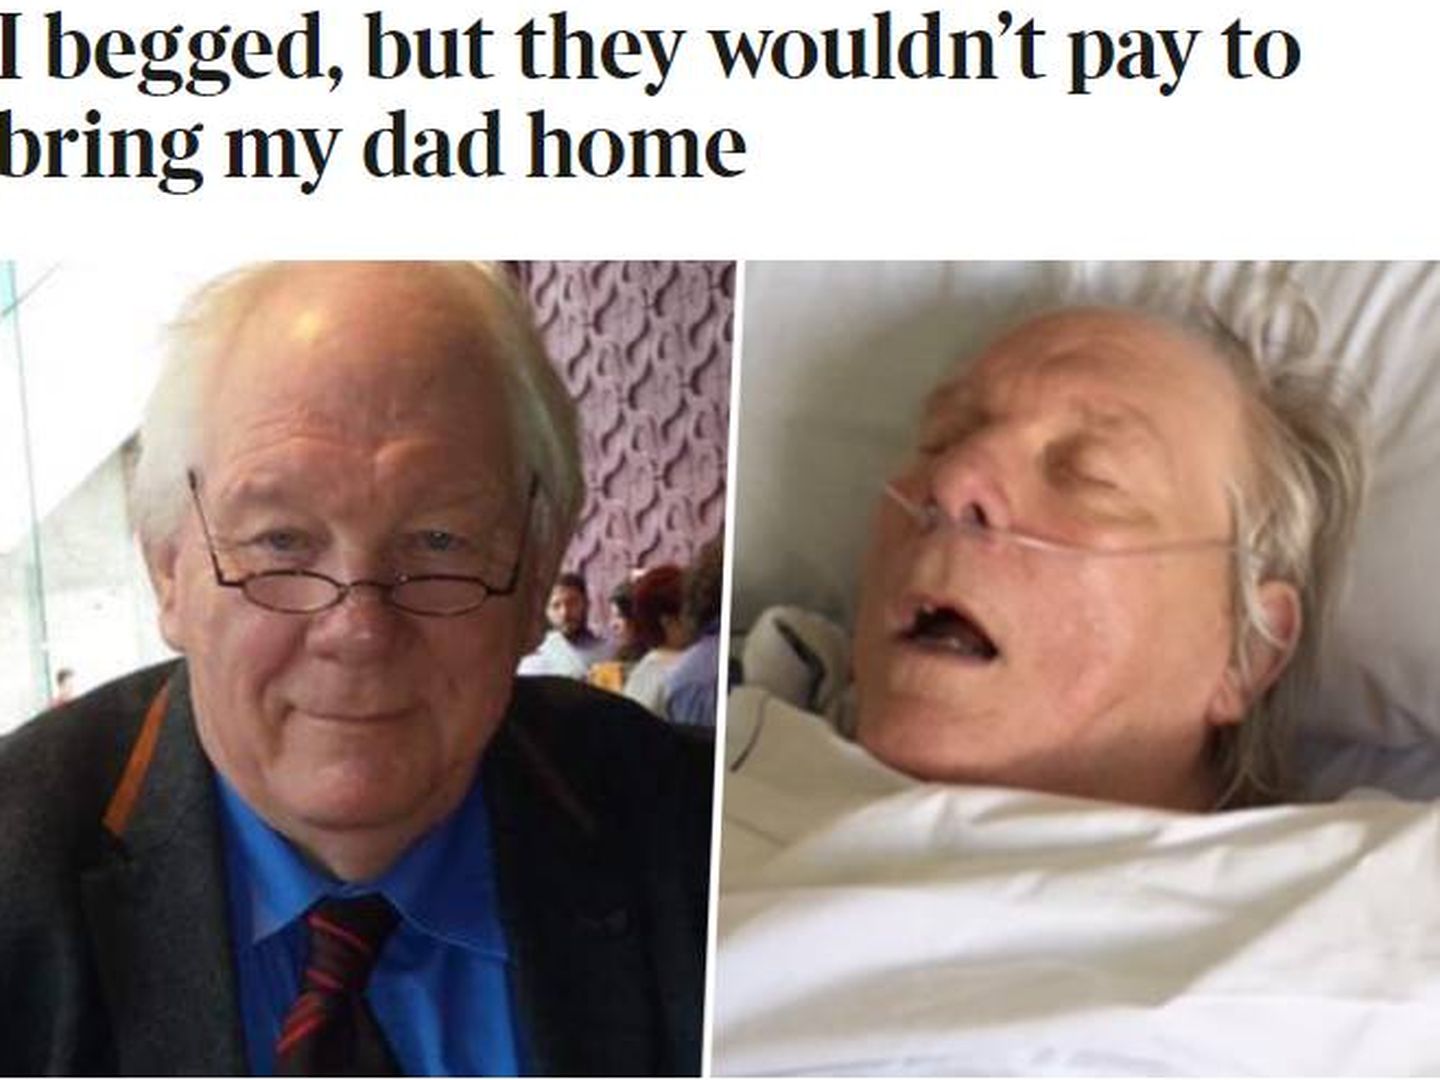 'The Times' destapó la muerte de un británico en Lanzarote, víctima del fraude de las aseguradoras. La familia llegó a pagar 22.000 libras por un avión ambulancia hasta Reino Unido.